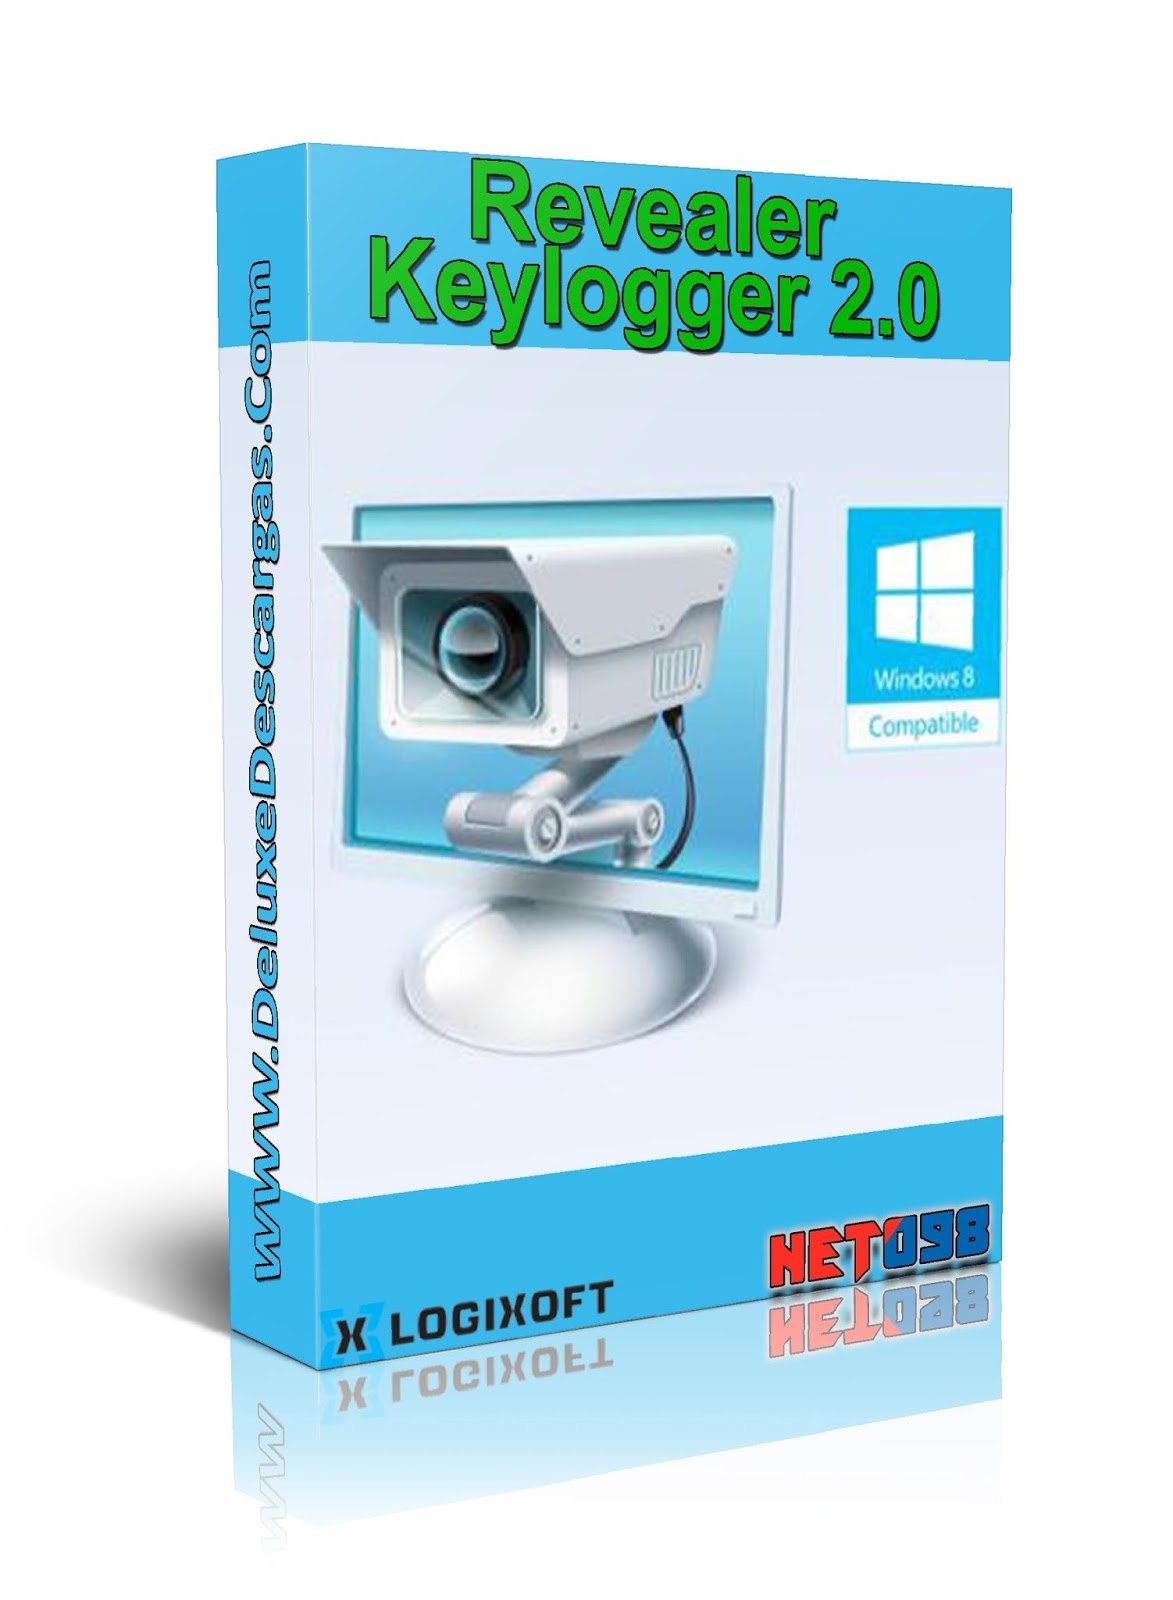 remover Keylogger.Revealer